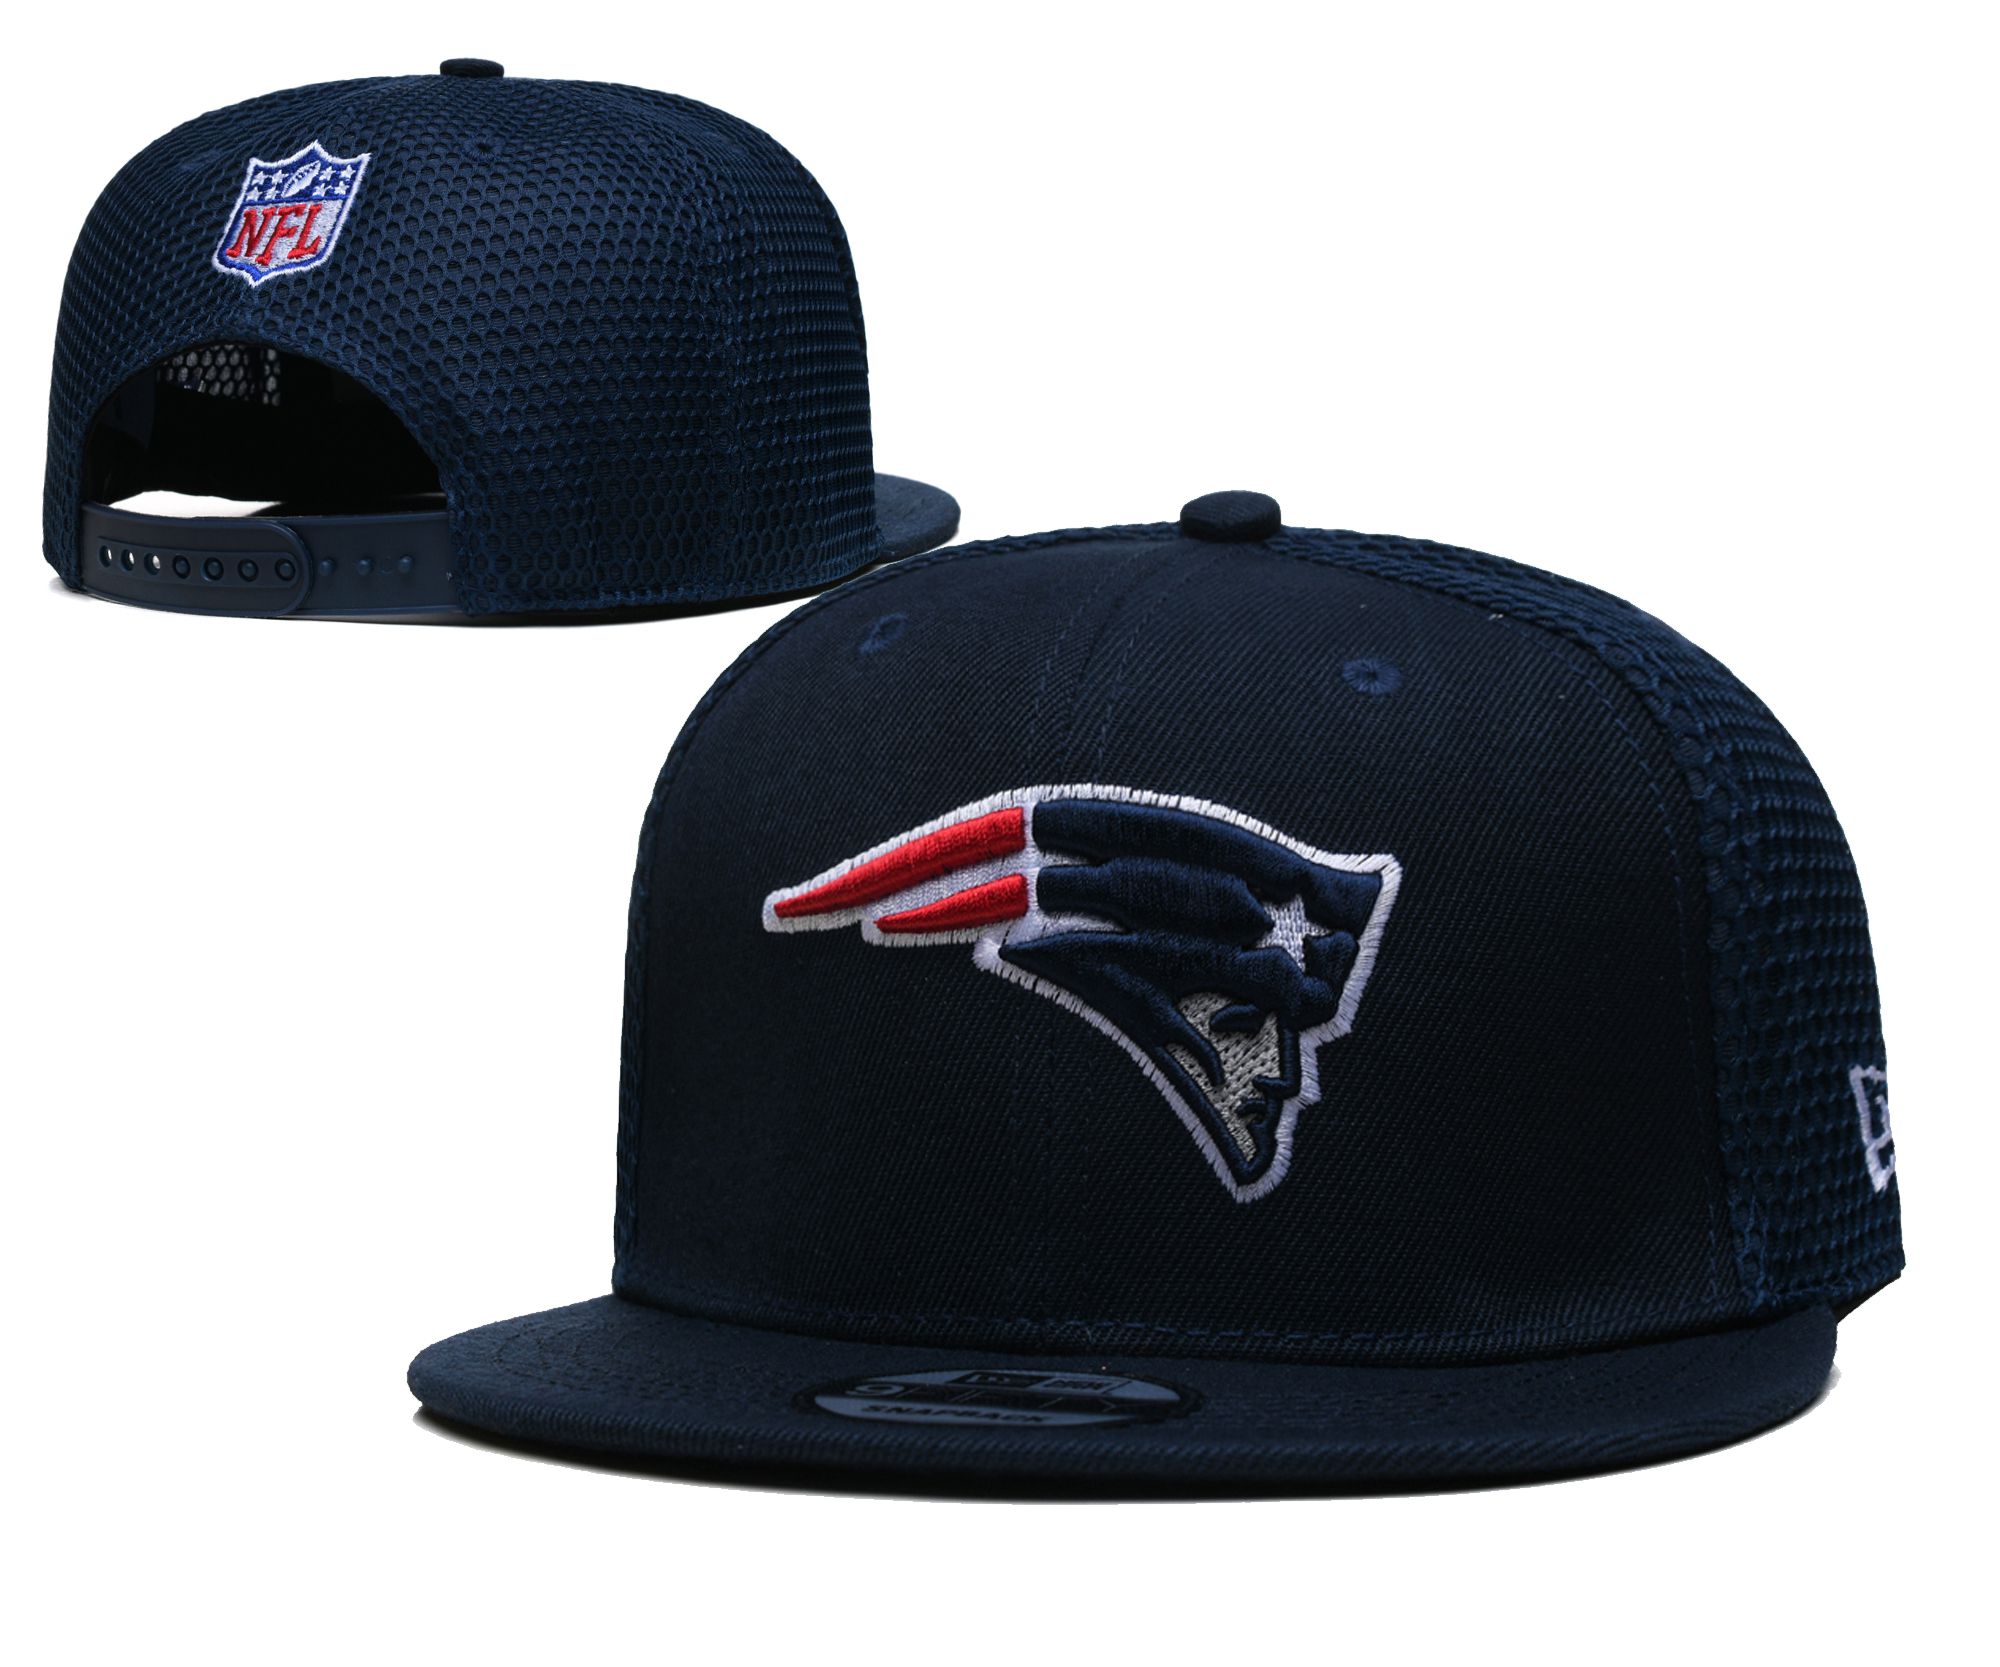 2022 NFL New England Patriots Hat TX 221->nfl hats->Sports Caps